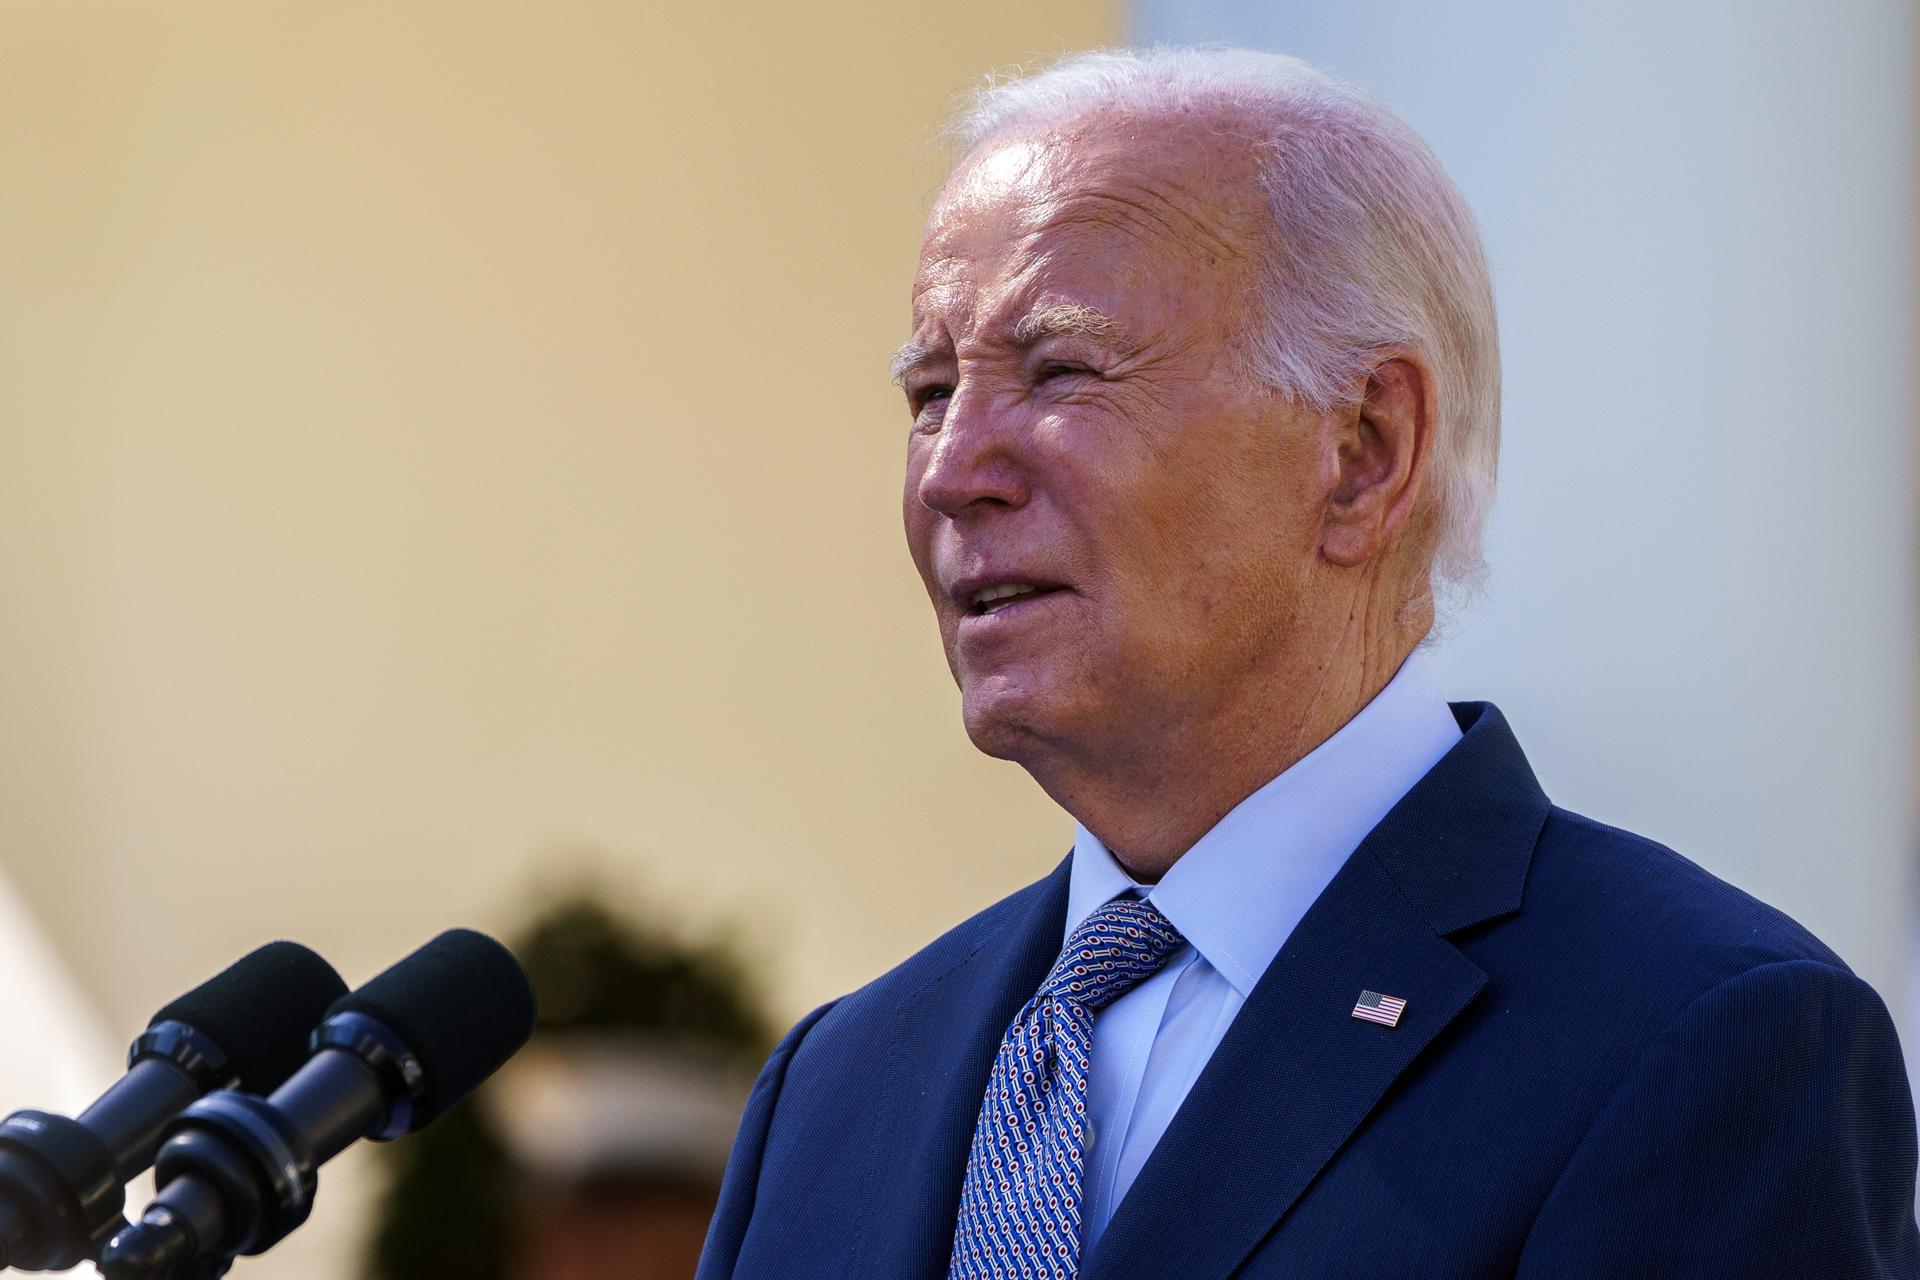 Biden insistió en que el compromiso de EE.UU. con Israel es "inquebrantable"